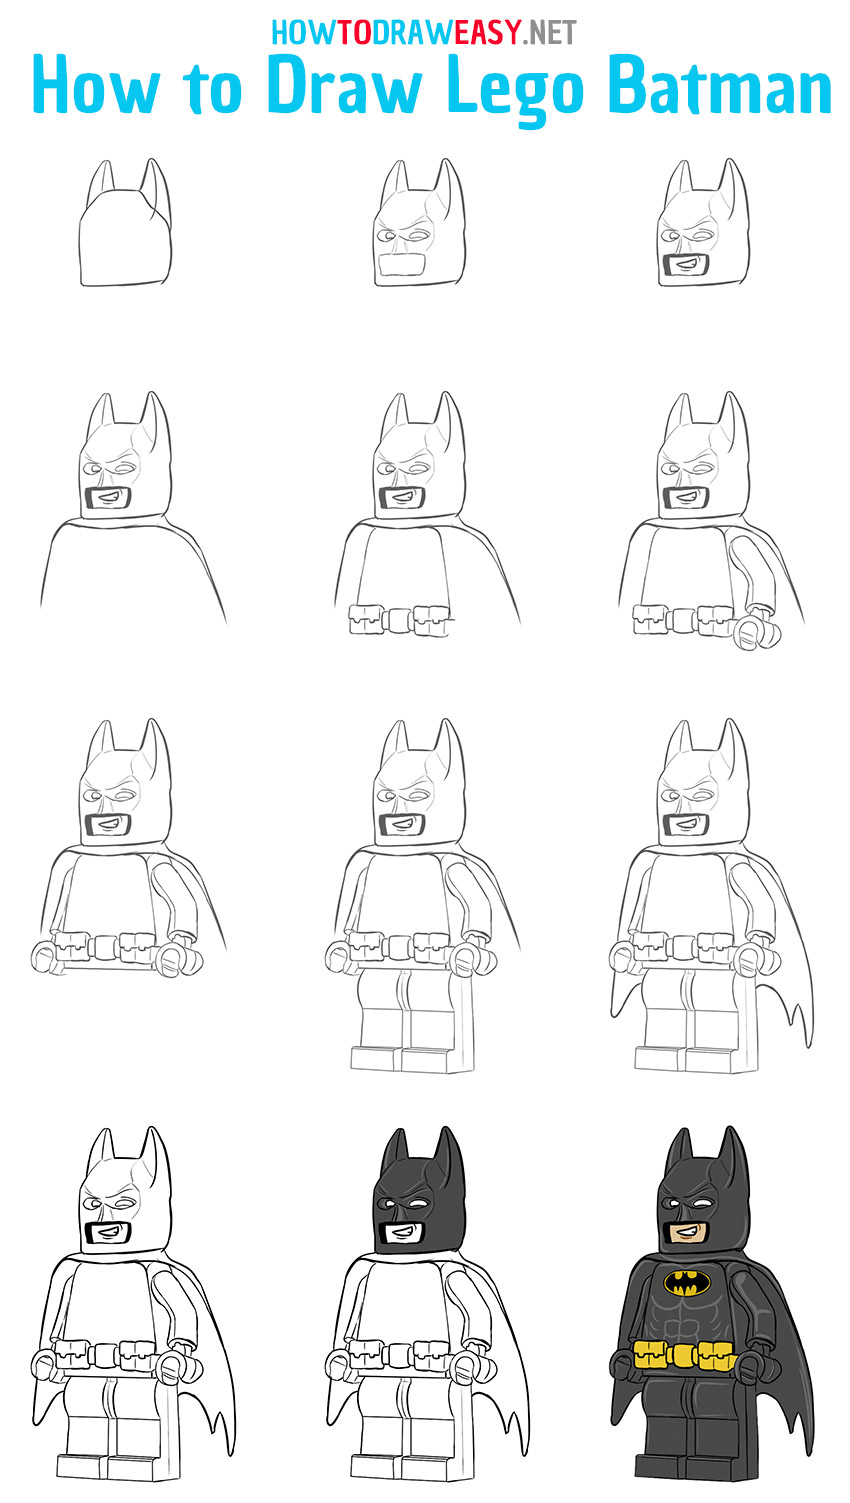 How To Draw Lego Batman